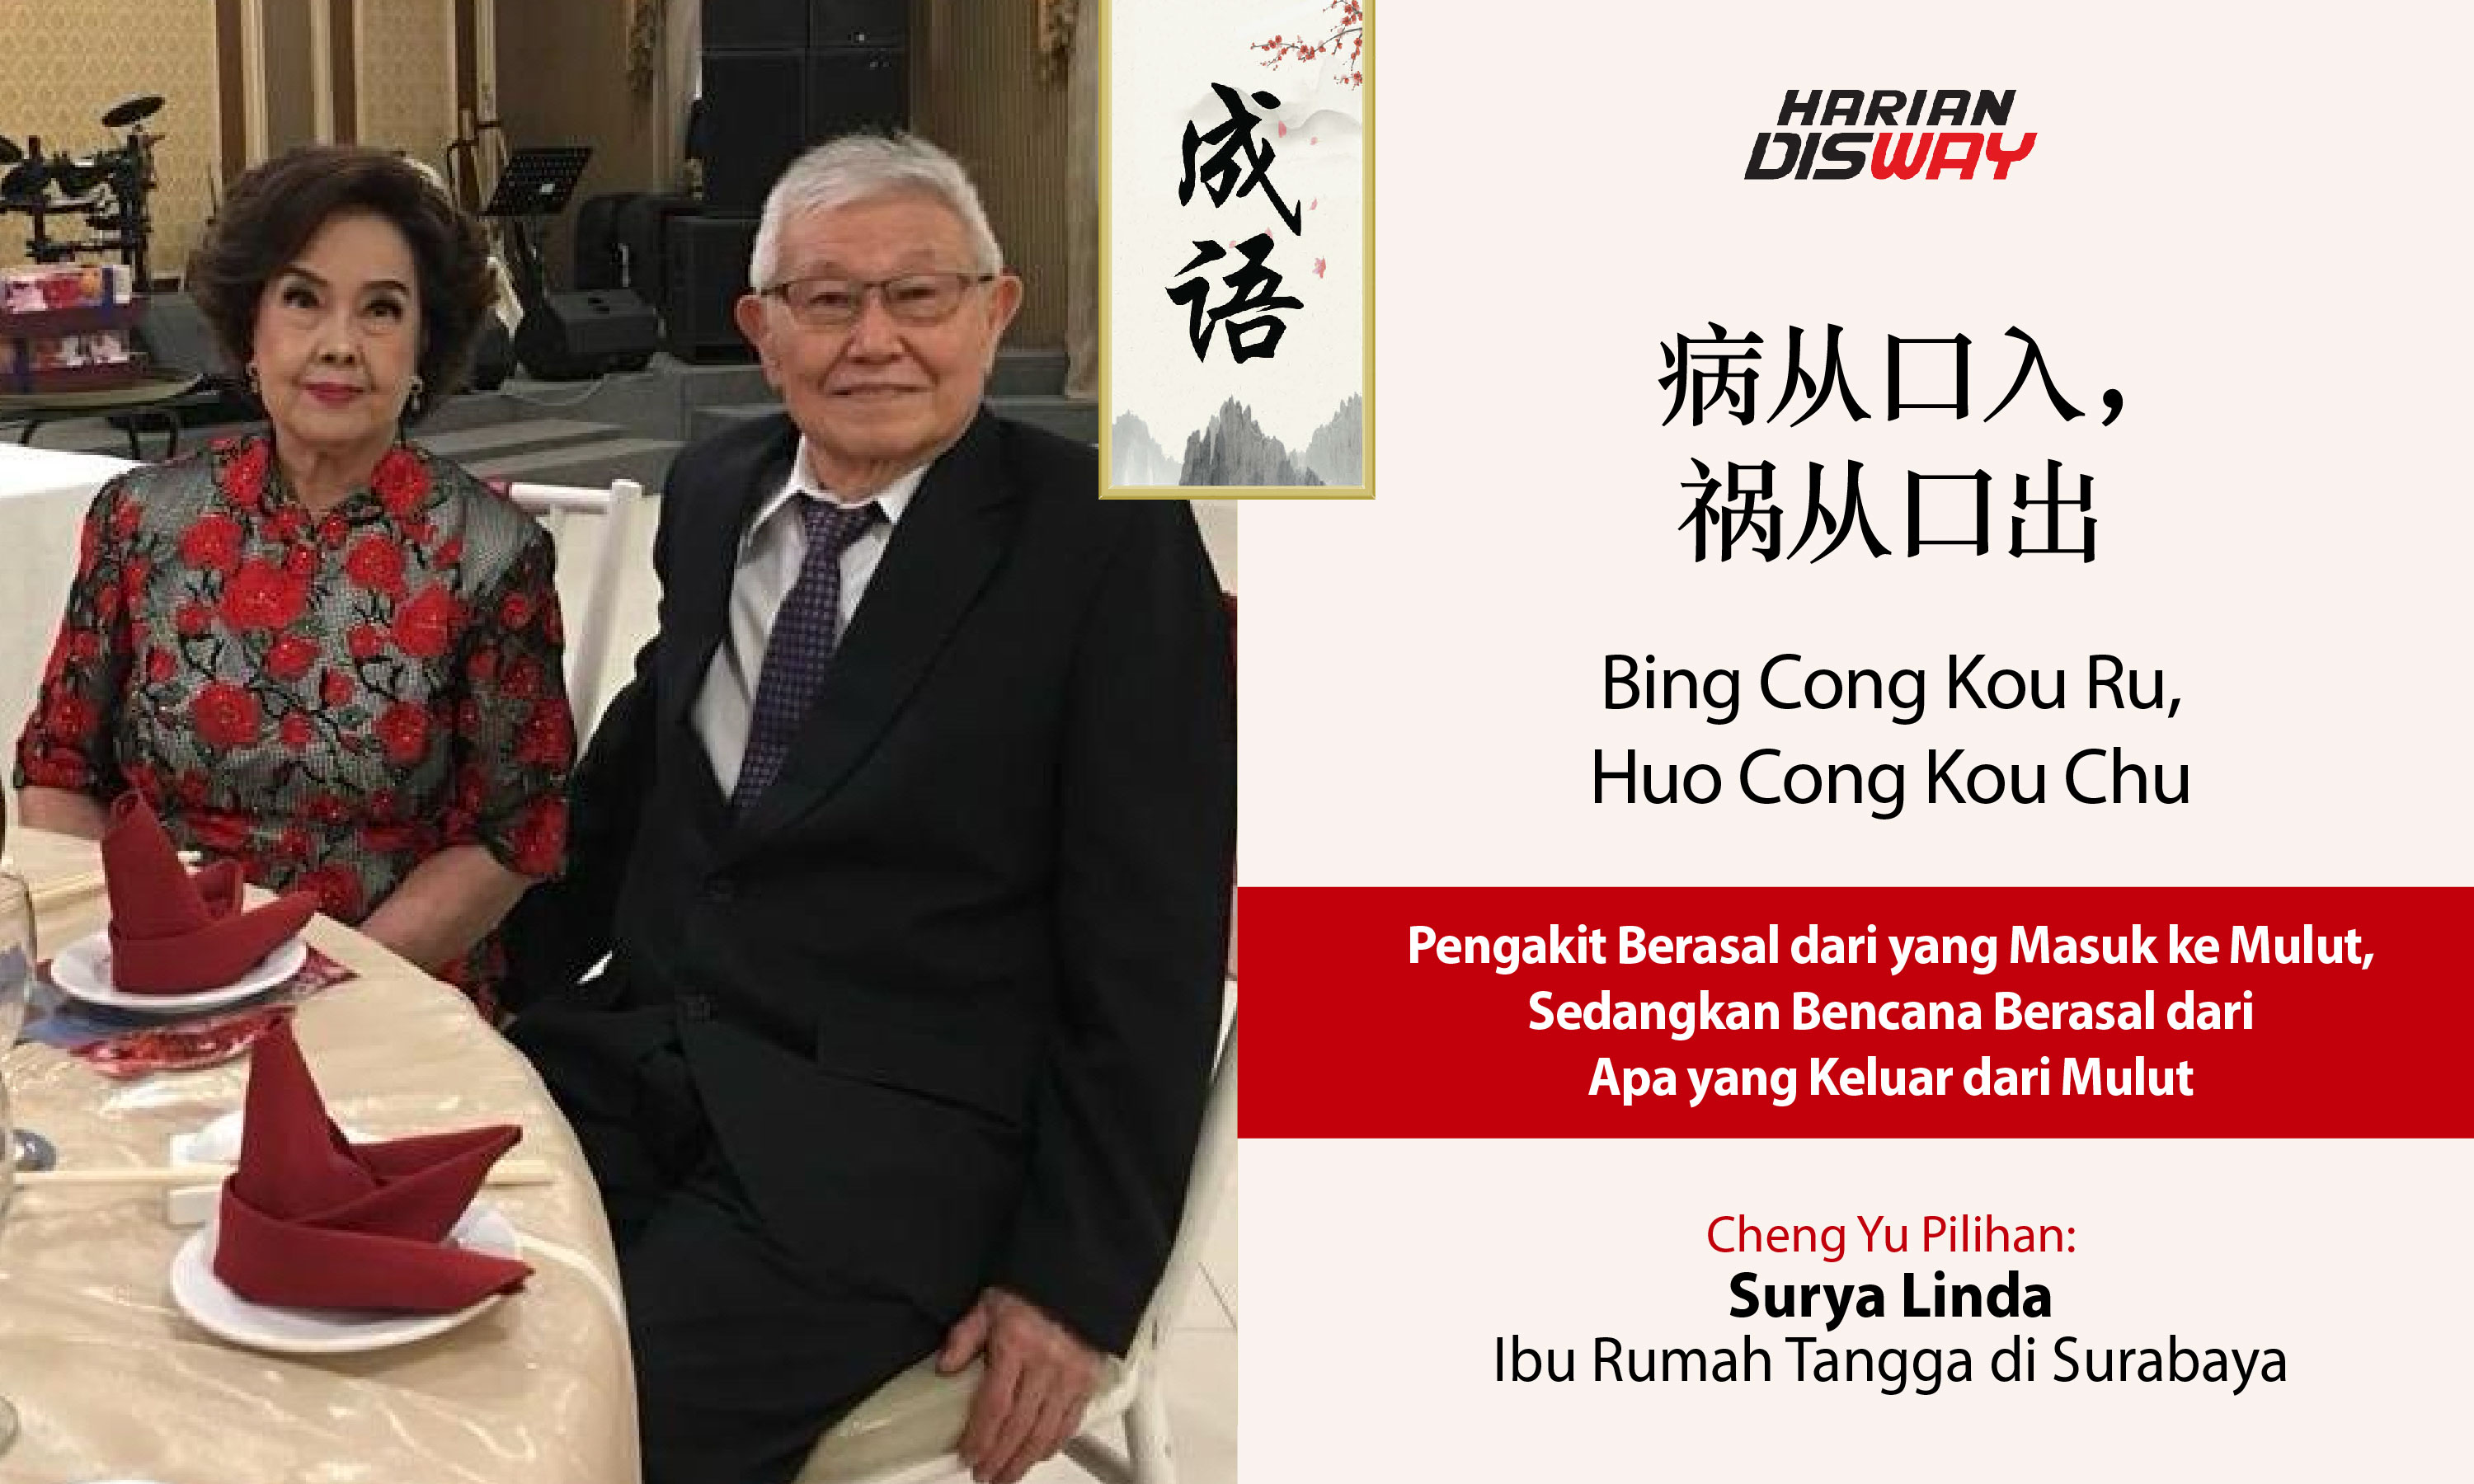 Cheng Yu PIlihan Surya Linda: Bing Cong Kou Ru, Huo Cong Kou Chu